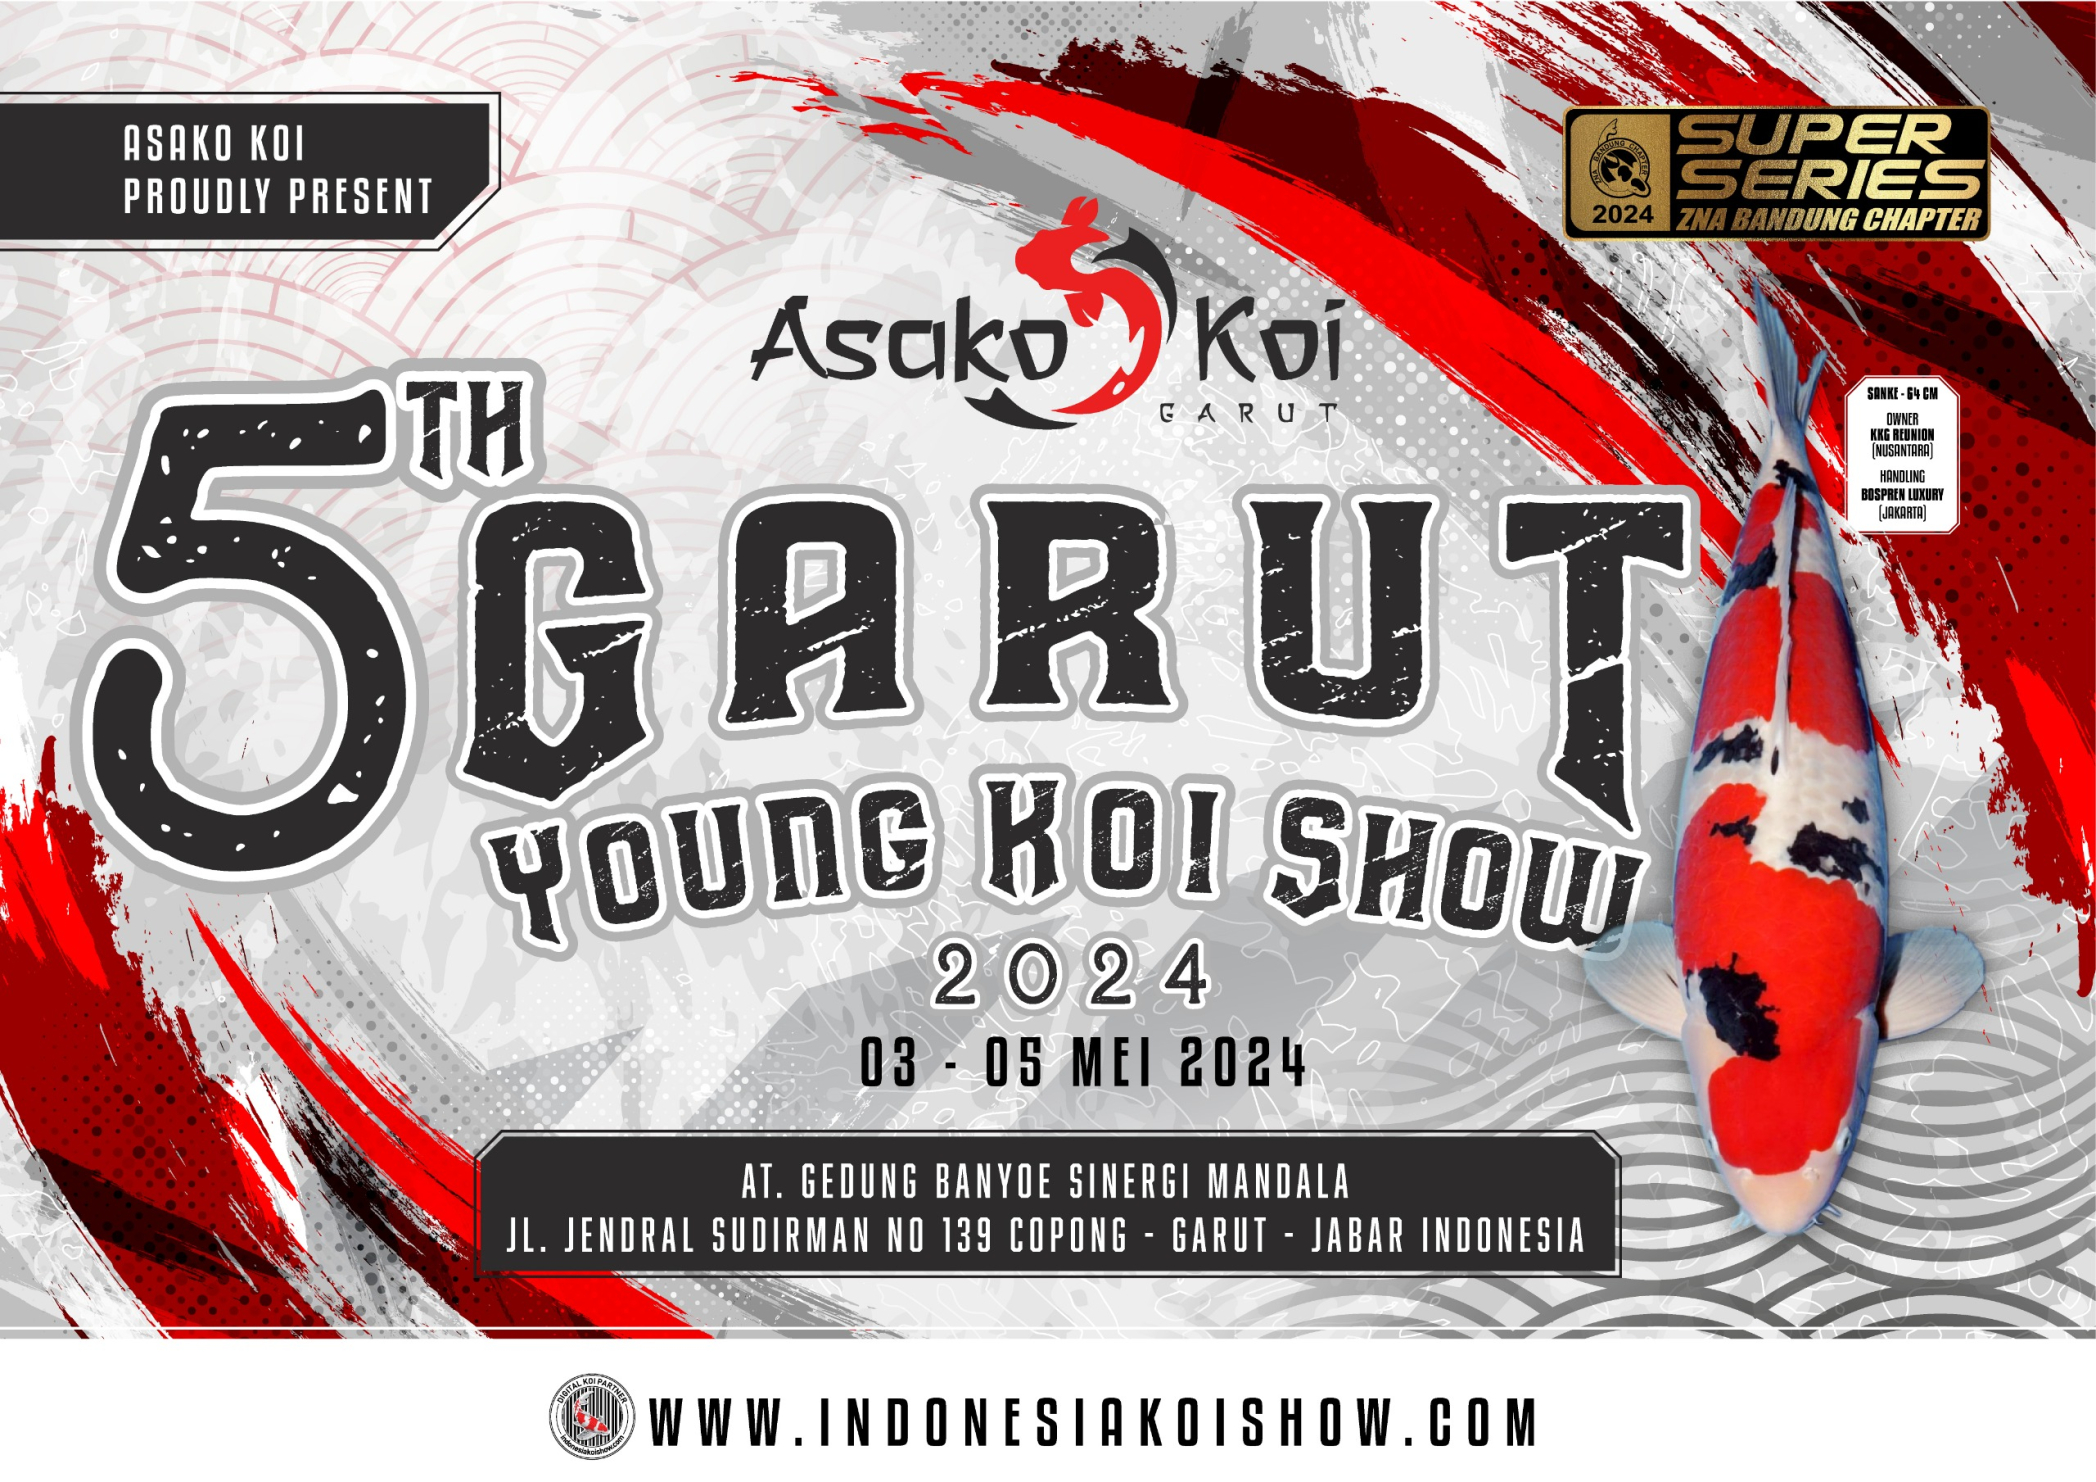 5th Garut Young Koi Show